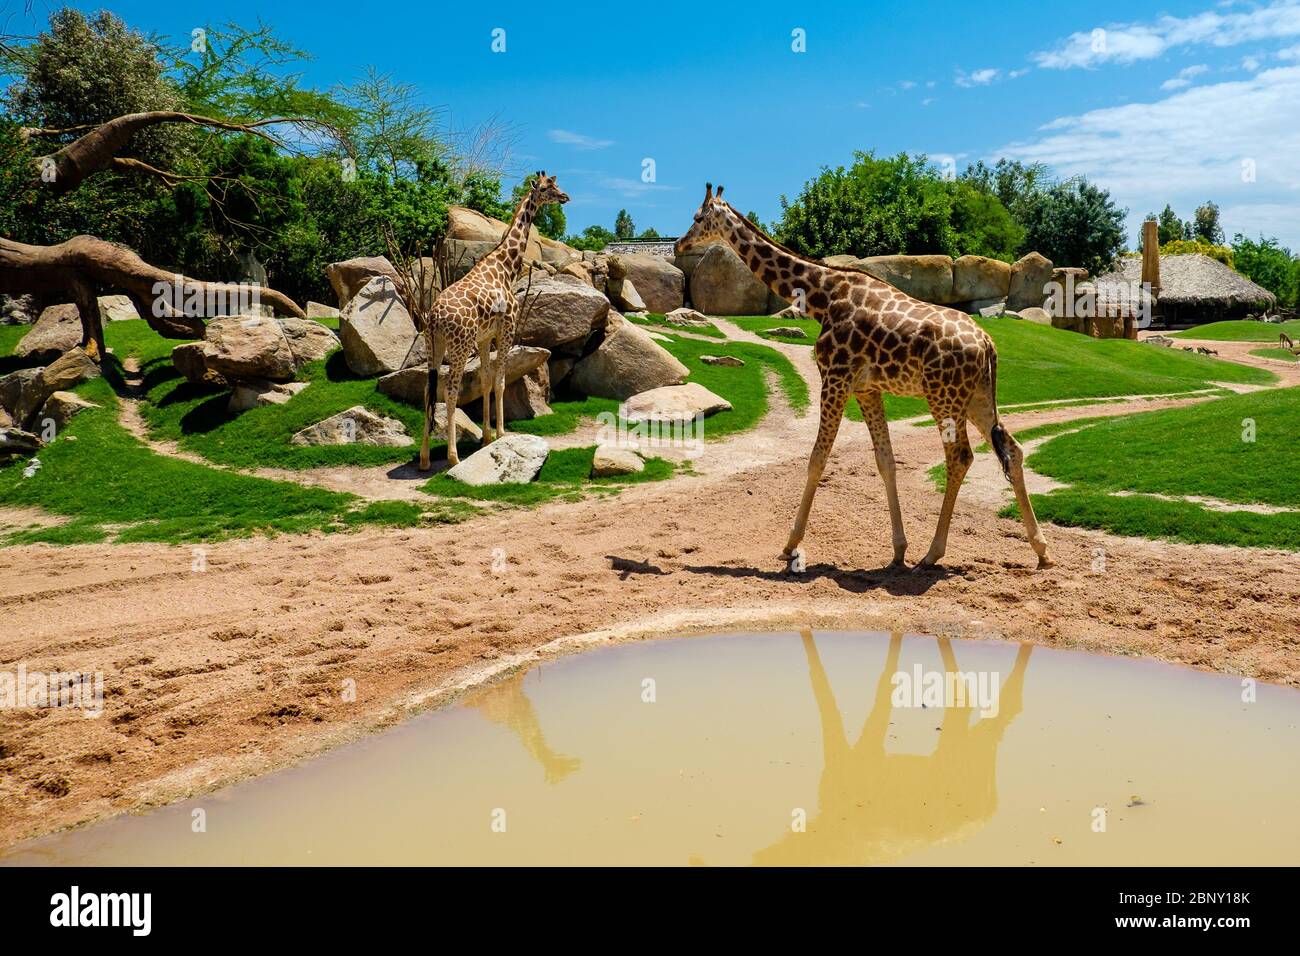 Die Giraffe ist eine Gattung von afrikanischen Artiodaktylsäugern, zu denen vier Arten gehören; sie ist das höchste lebende Erdtier, sowie das größte Stockfoto